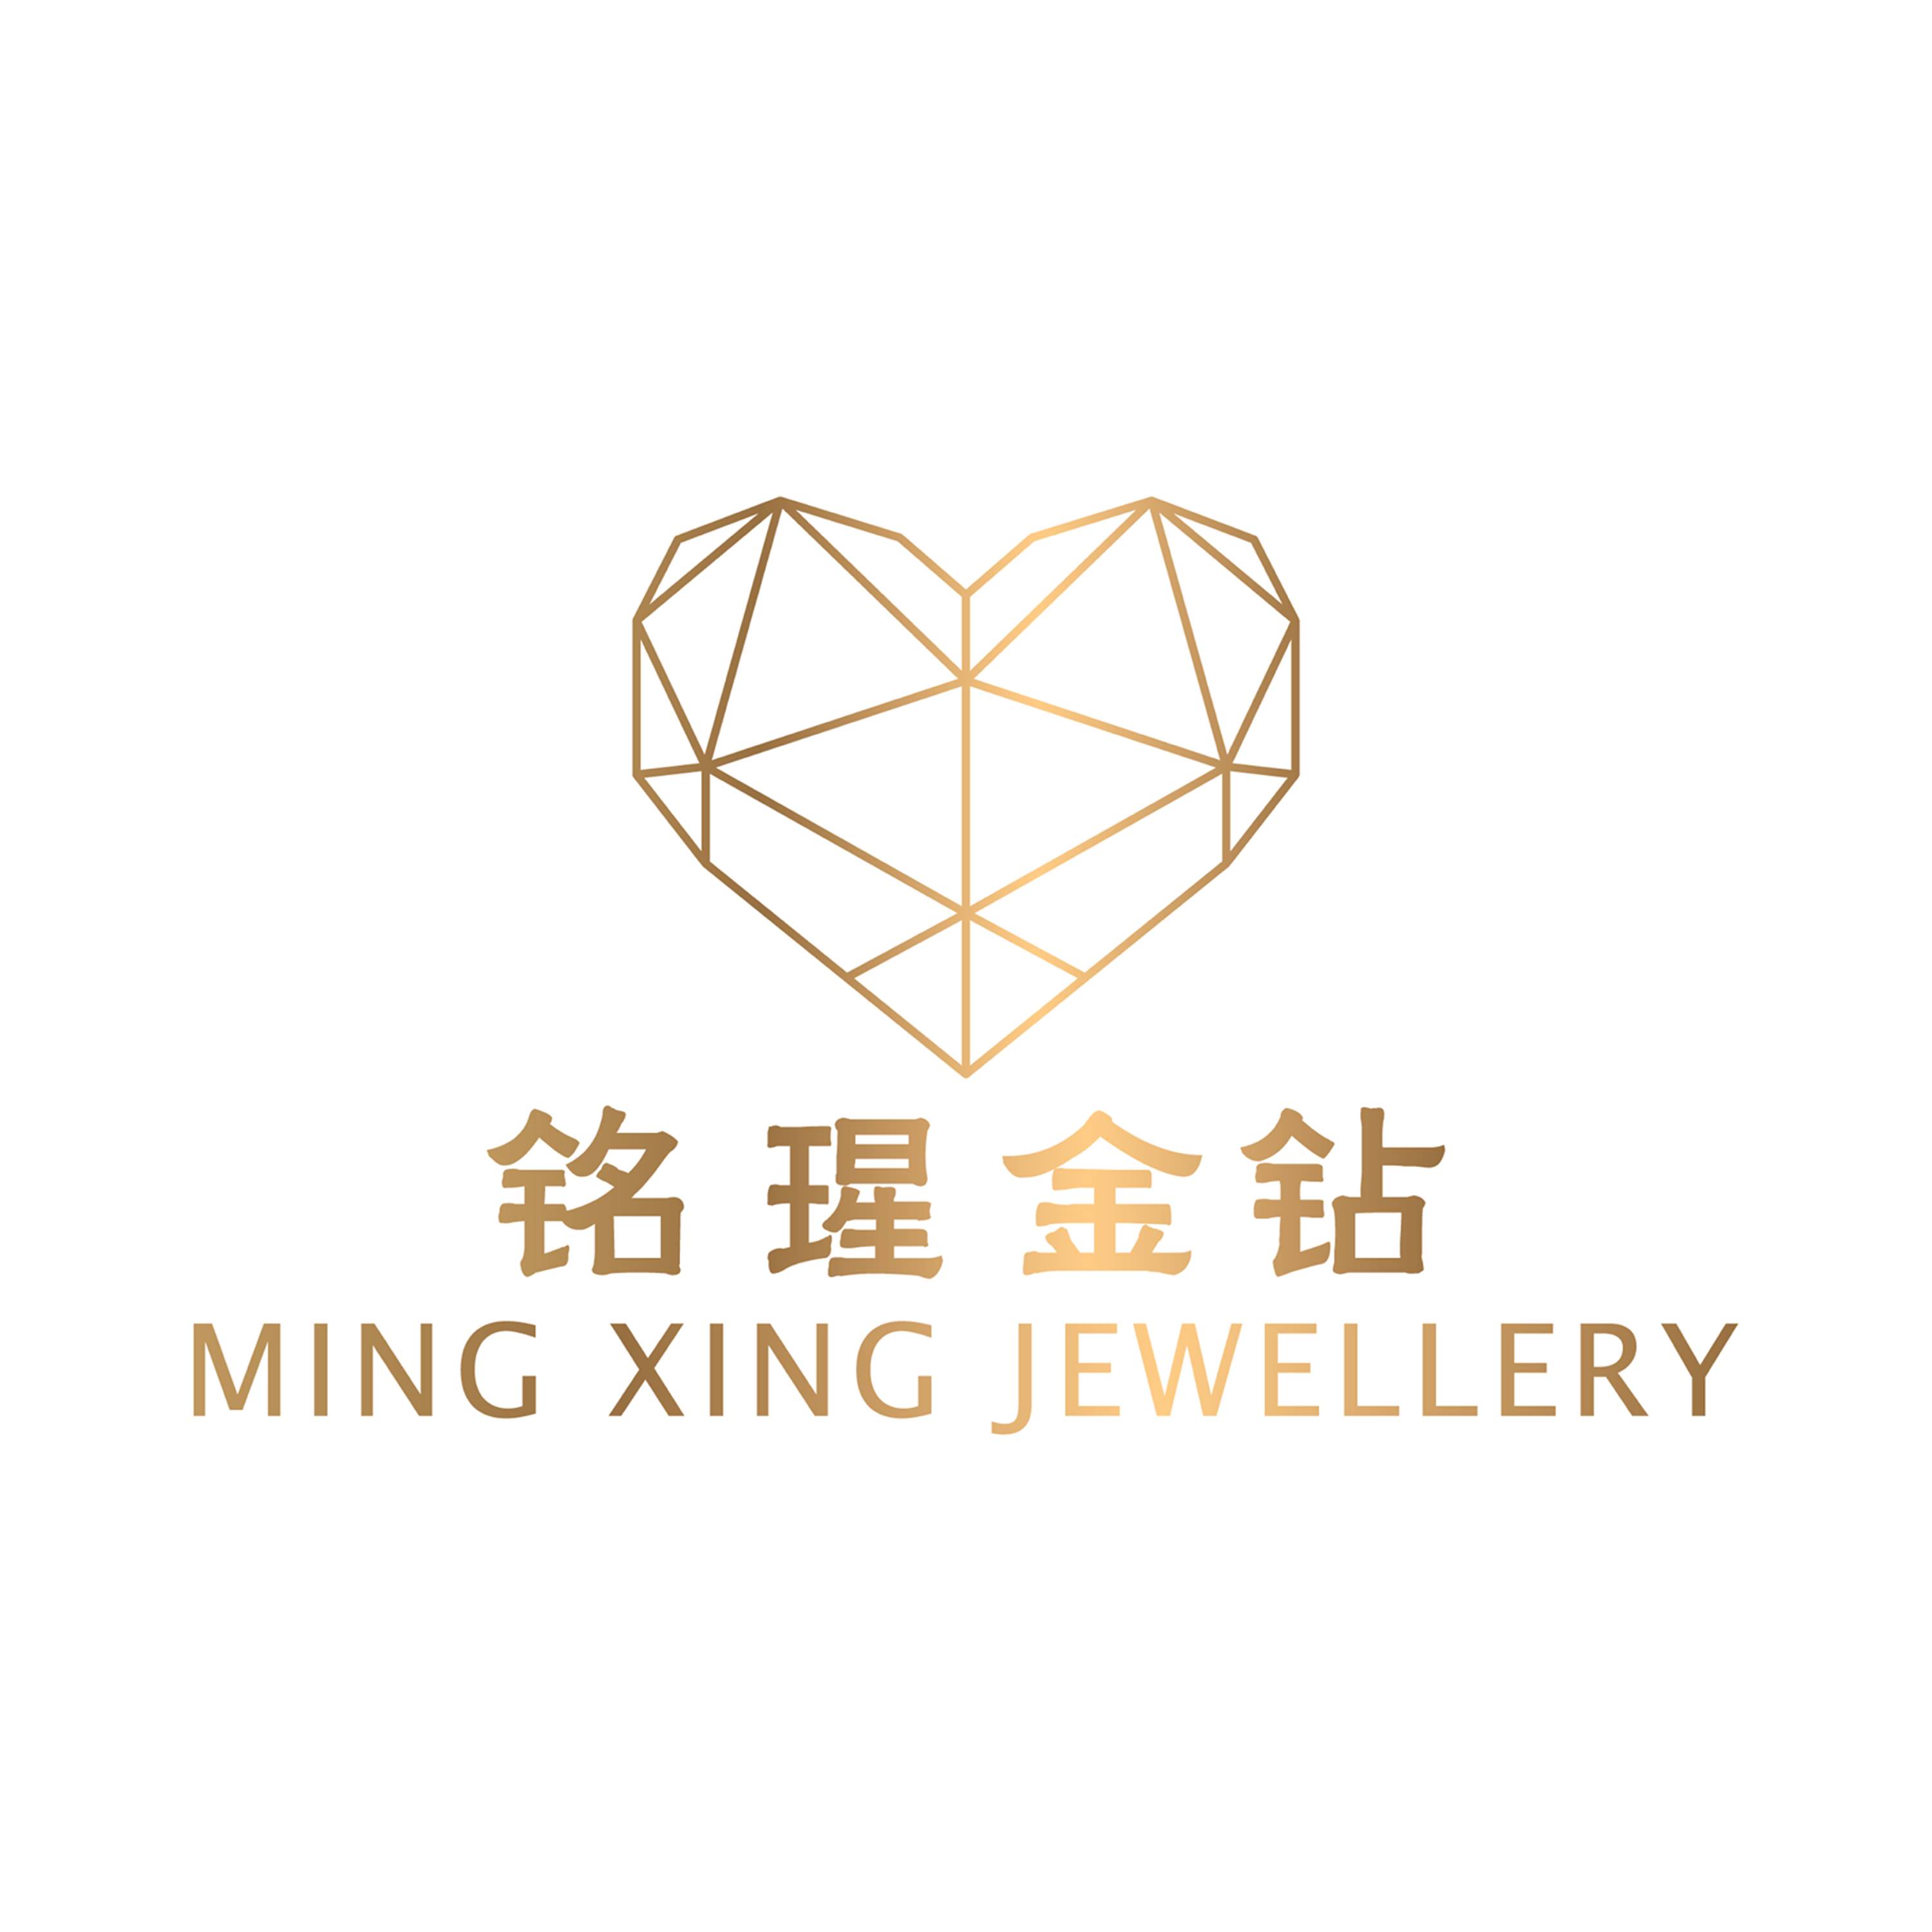 Ming Xing Jewellery